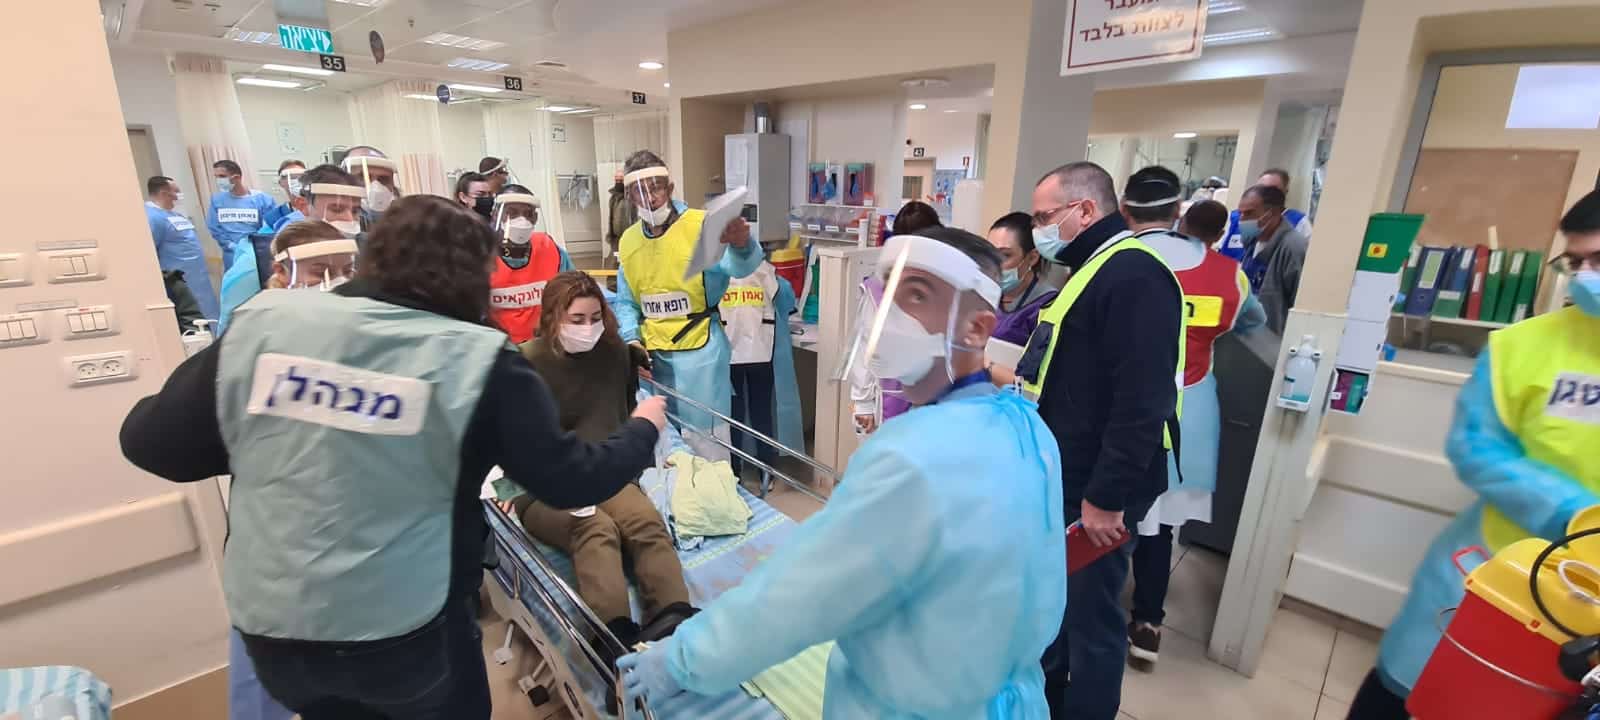 תרגיל אירוע רב נפגעים בבית חולים כרמל, קרדיט צילום: אלי דדון